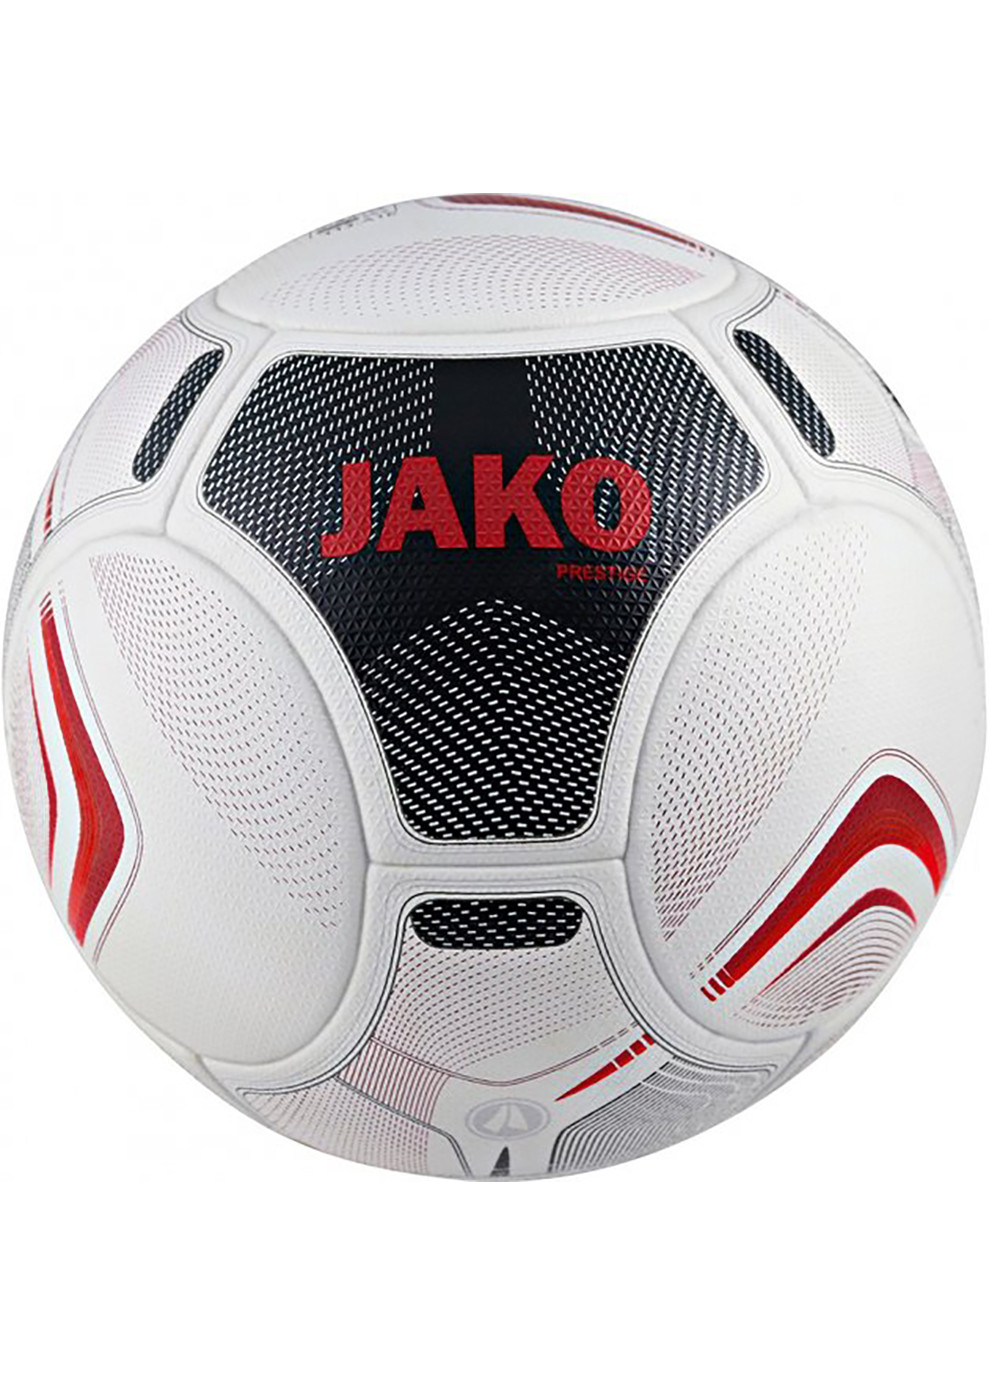 Мяч футбольный Fifa Prestige Qulity Pro белый, черный, бордовый Уни 5 Jako (259296446)